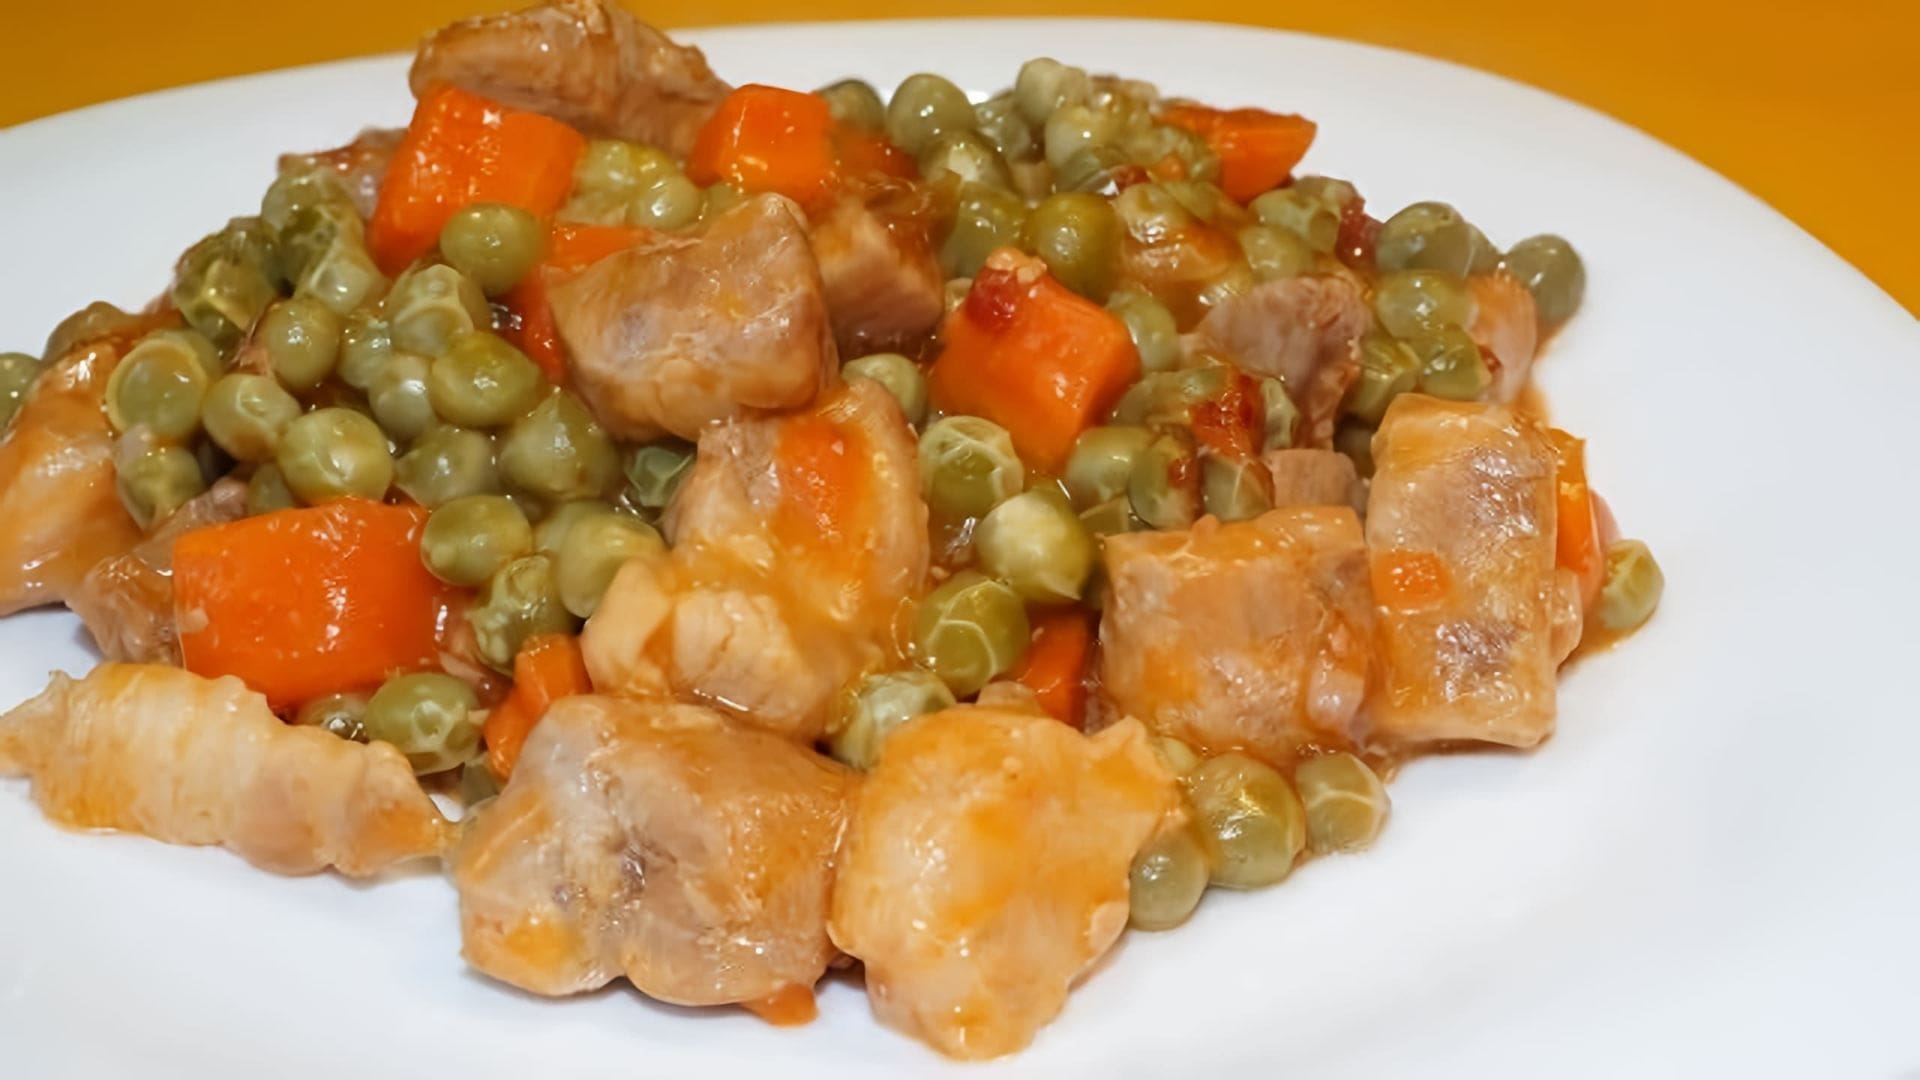 В этом видео демонстрируется процесс приготовления вкусного и простого блюда - свинины тушеной с морковью и зеленым горошком